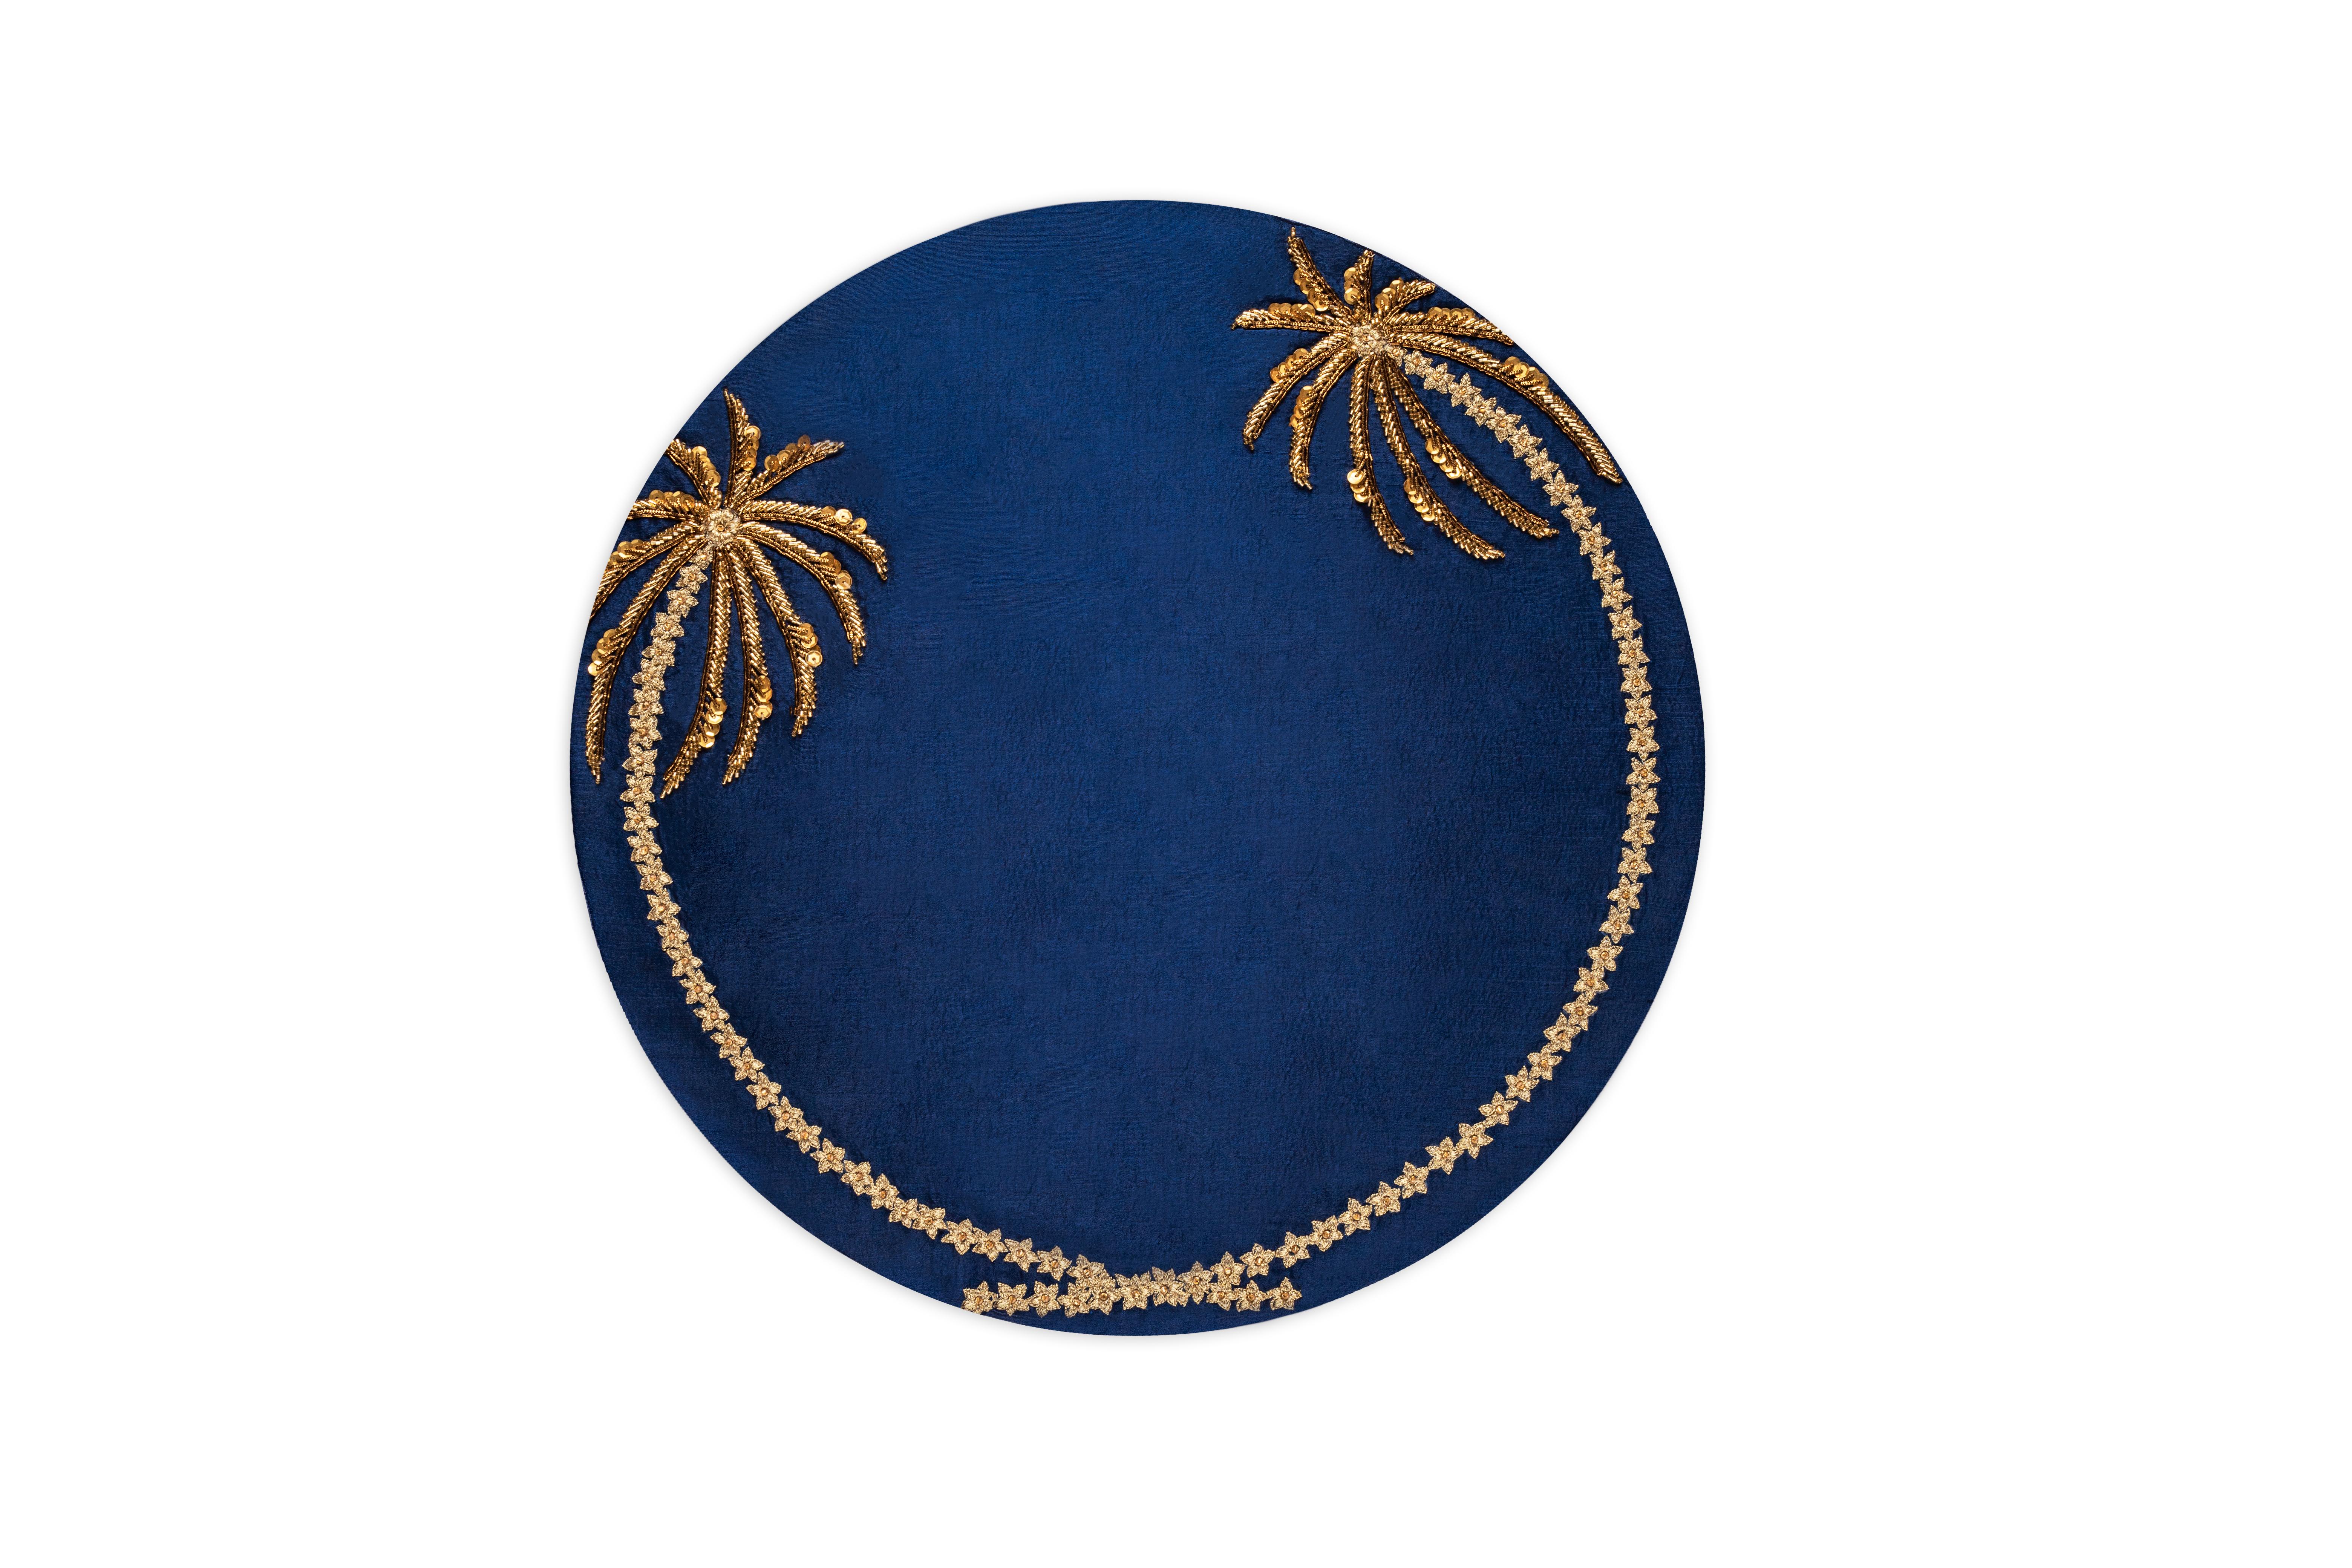 Das von Hand gefertigte Tischset Les Palmier vereint zwei Palmen, die einen prächtigen Heiligenschein um Ihr Geschirr bilden. Die Stämme sind aufwändig mit Goldfäden bestickt, während die Palmblätter mit Perlenstickerei verziert sind.